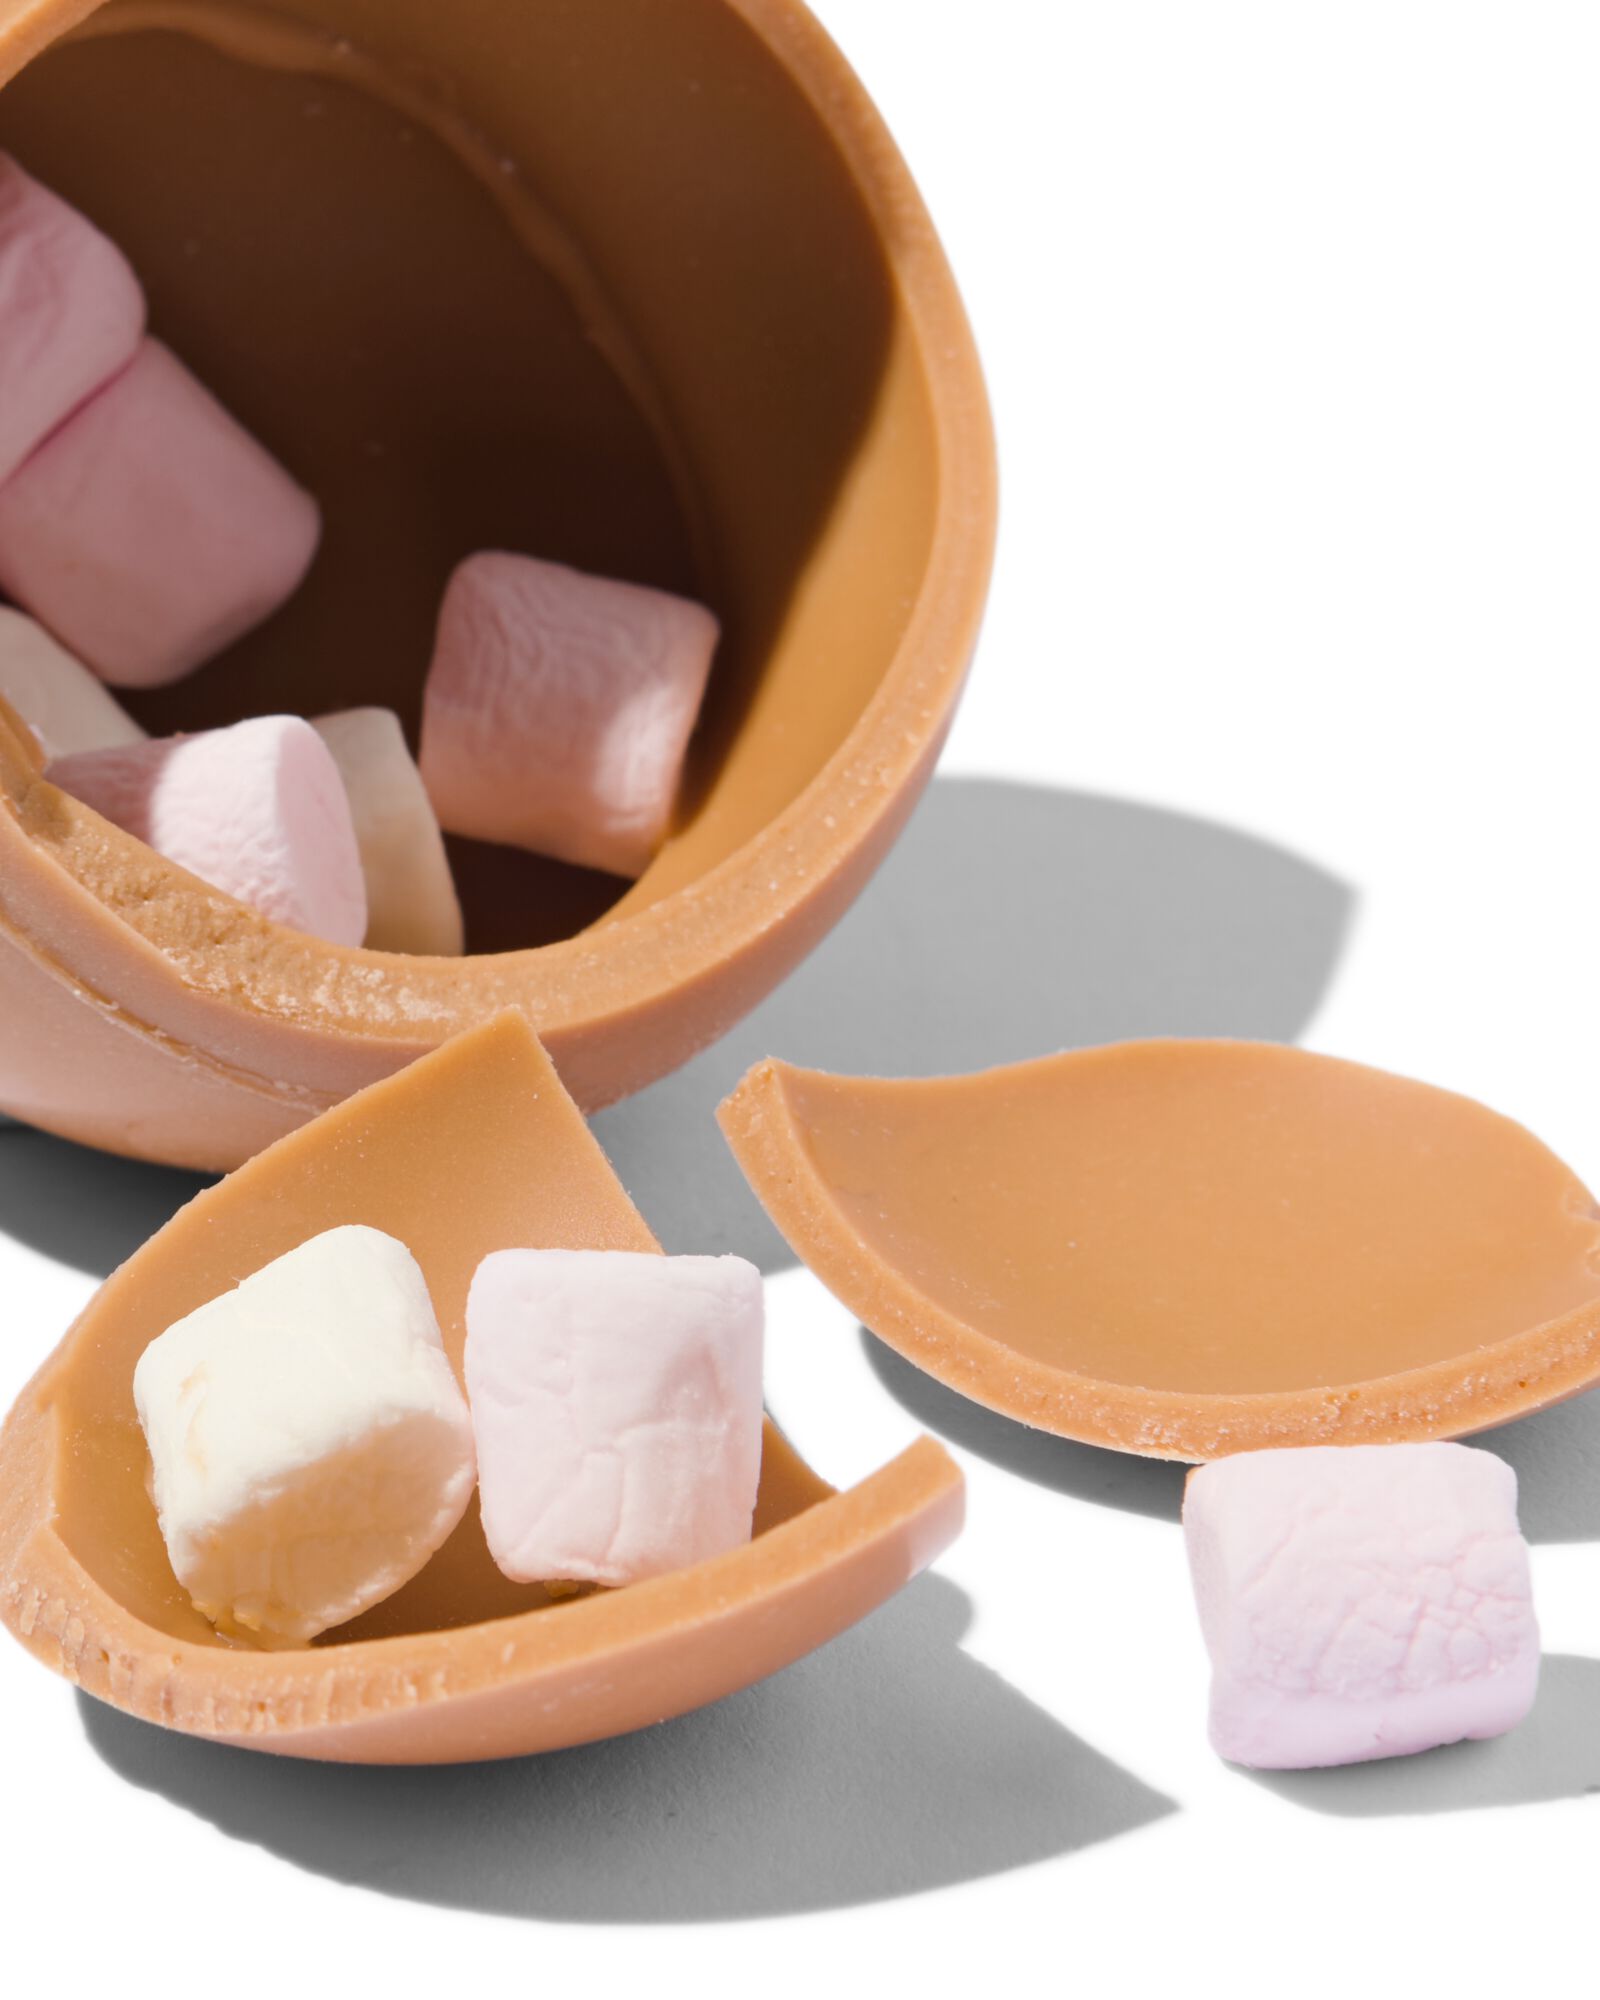 choco bomb karamel met marshmallow - 24562252 - HEMA